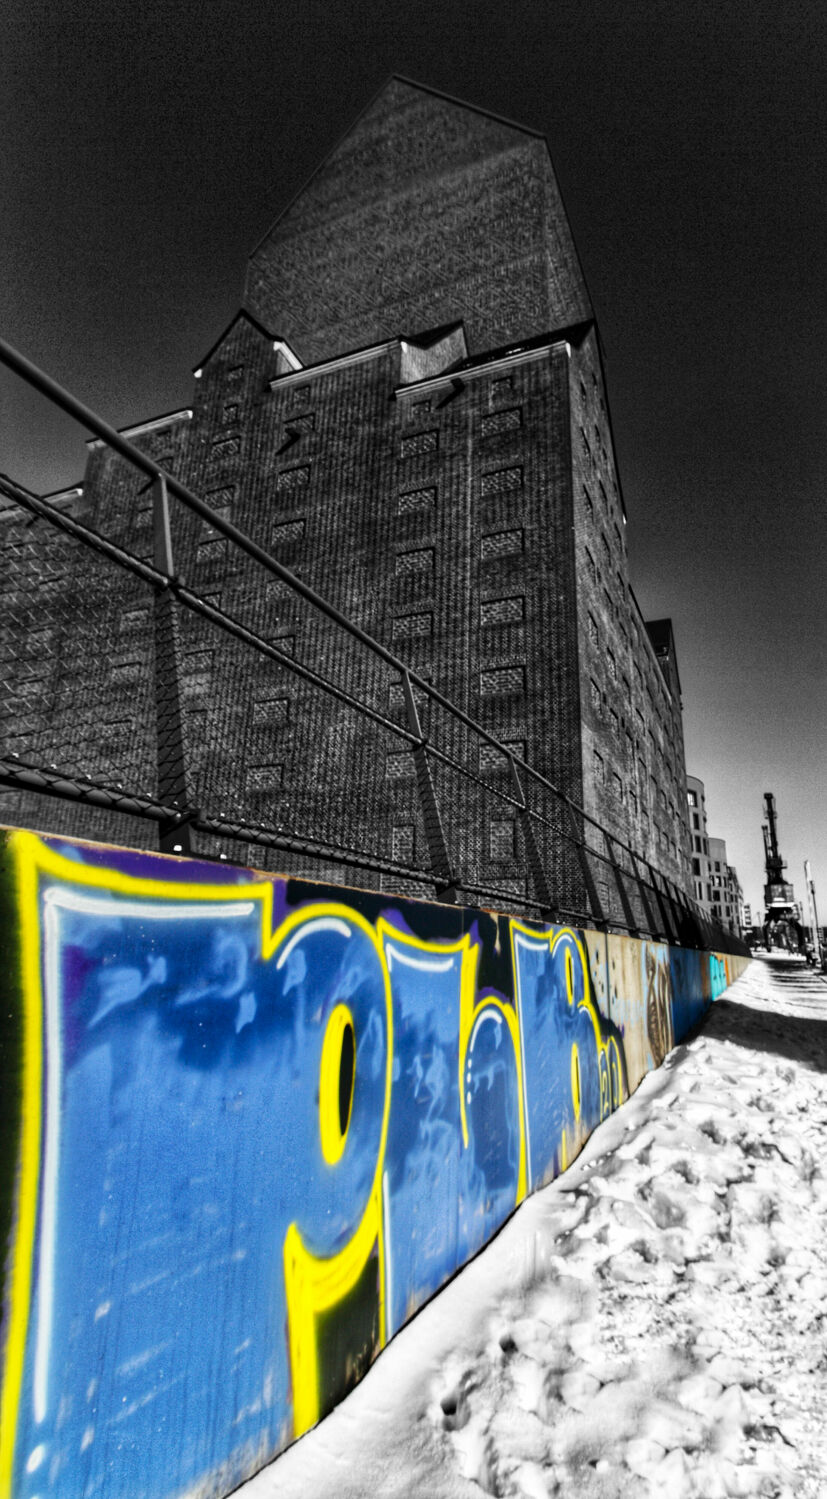 Bild mit Winter, Schnee, blue, Duisburg, Colorkey, Graffiti, Binnenhafen, Lagerhaus